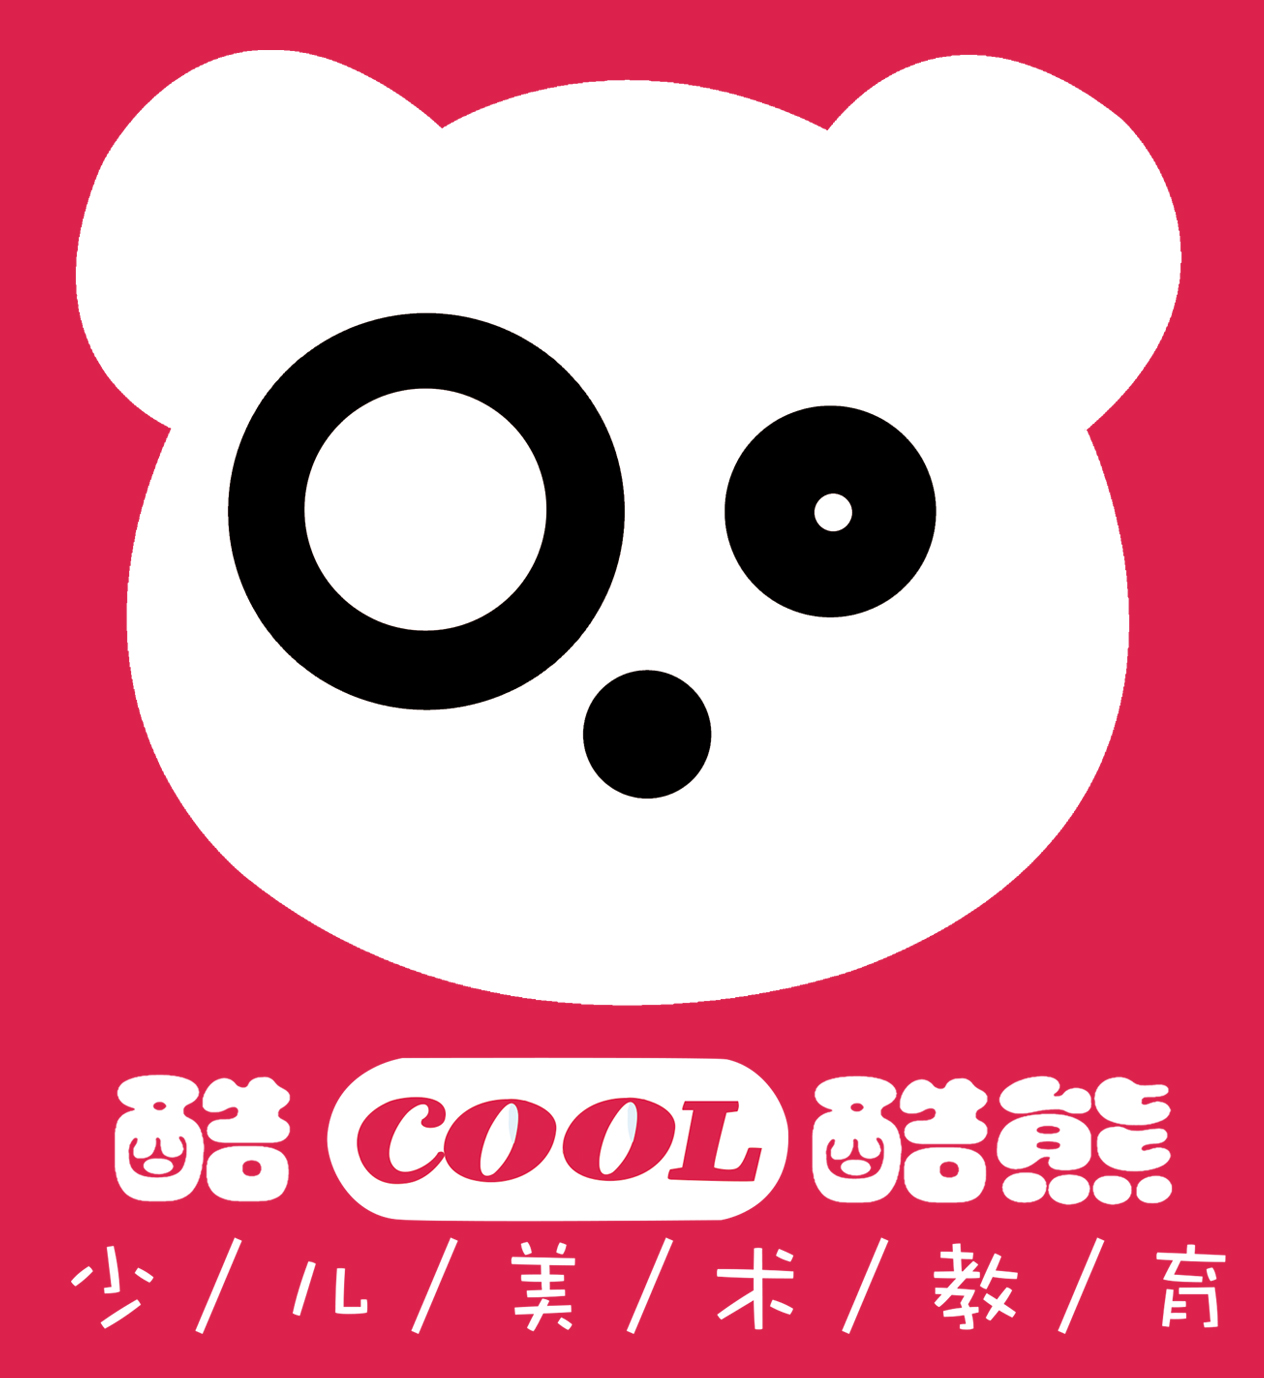 酷迪熊logo图片